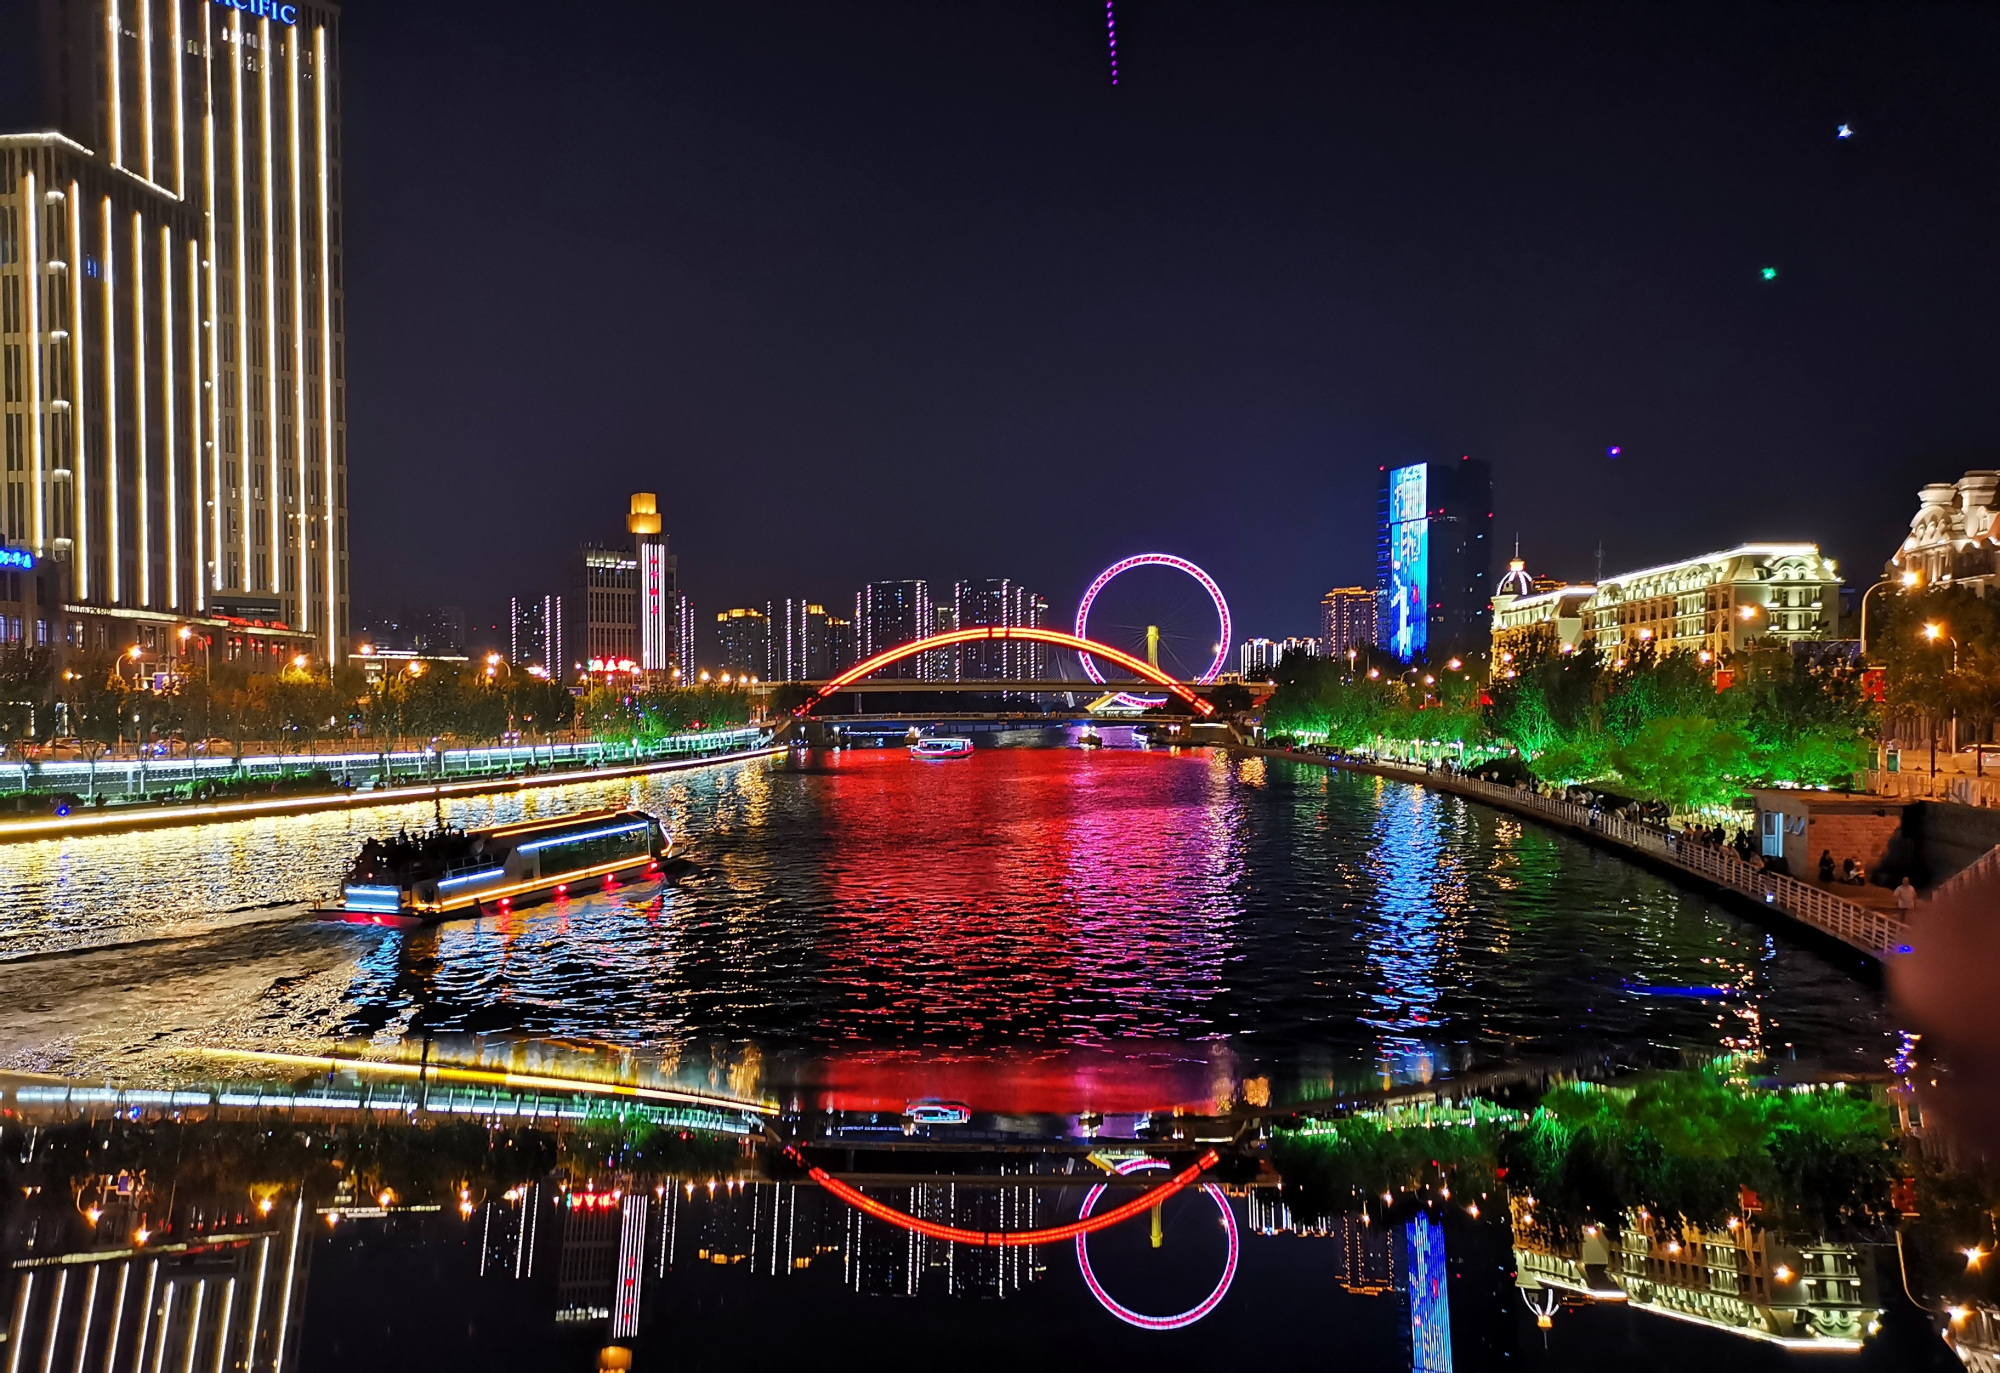 天津市展示了璀璨的灯光效果:海河夜景已经成为天津市的崭新名片